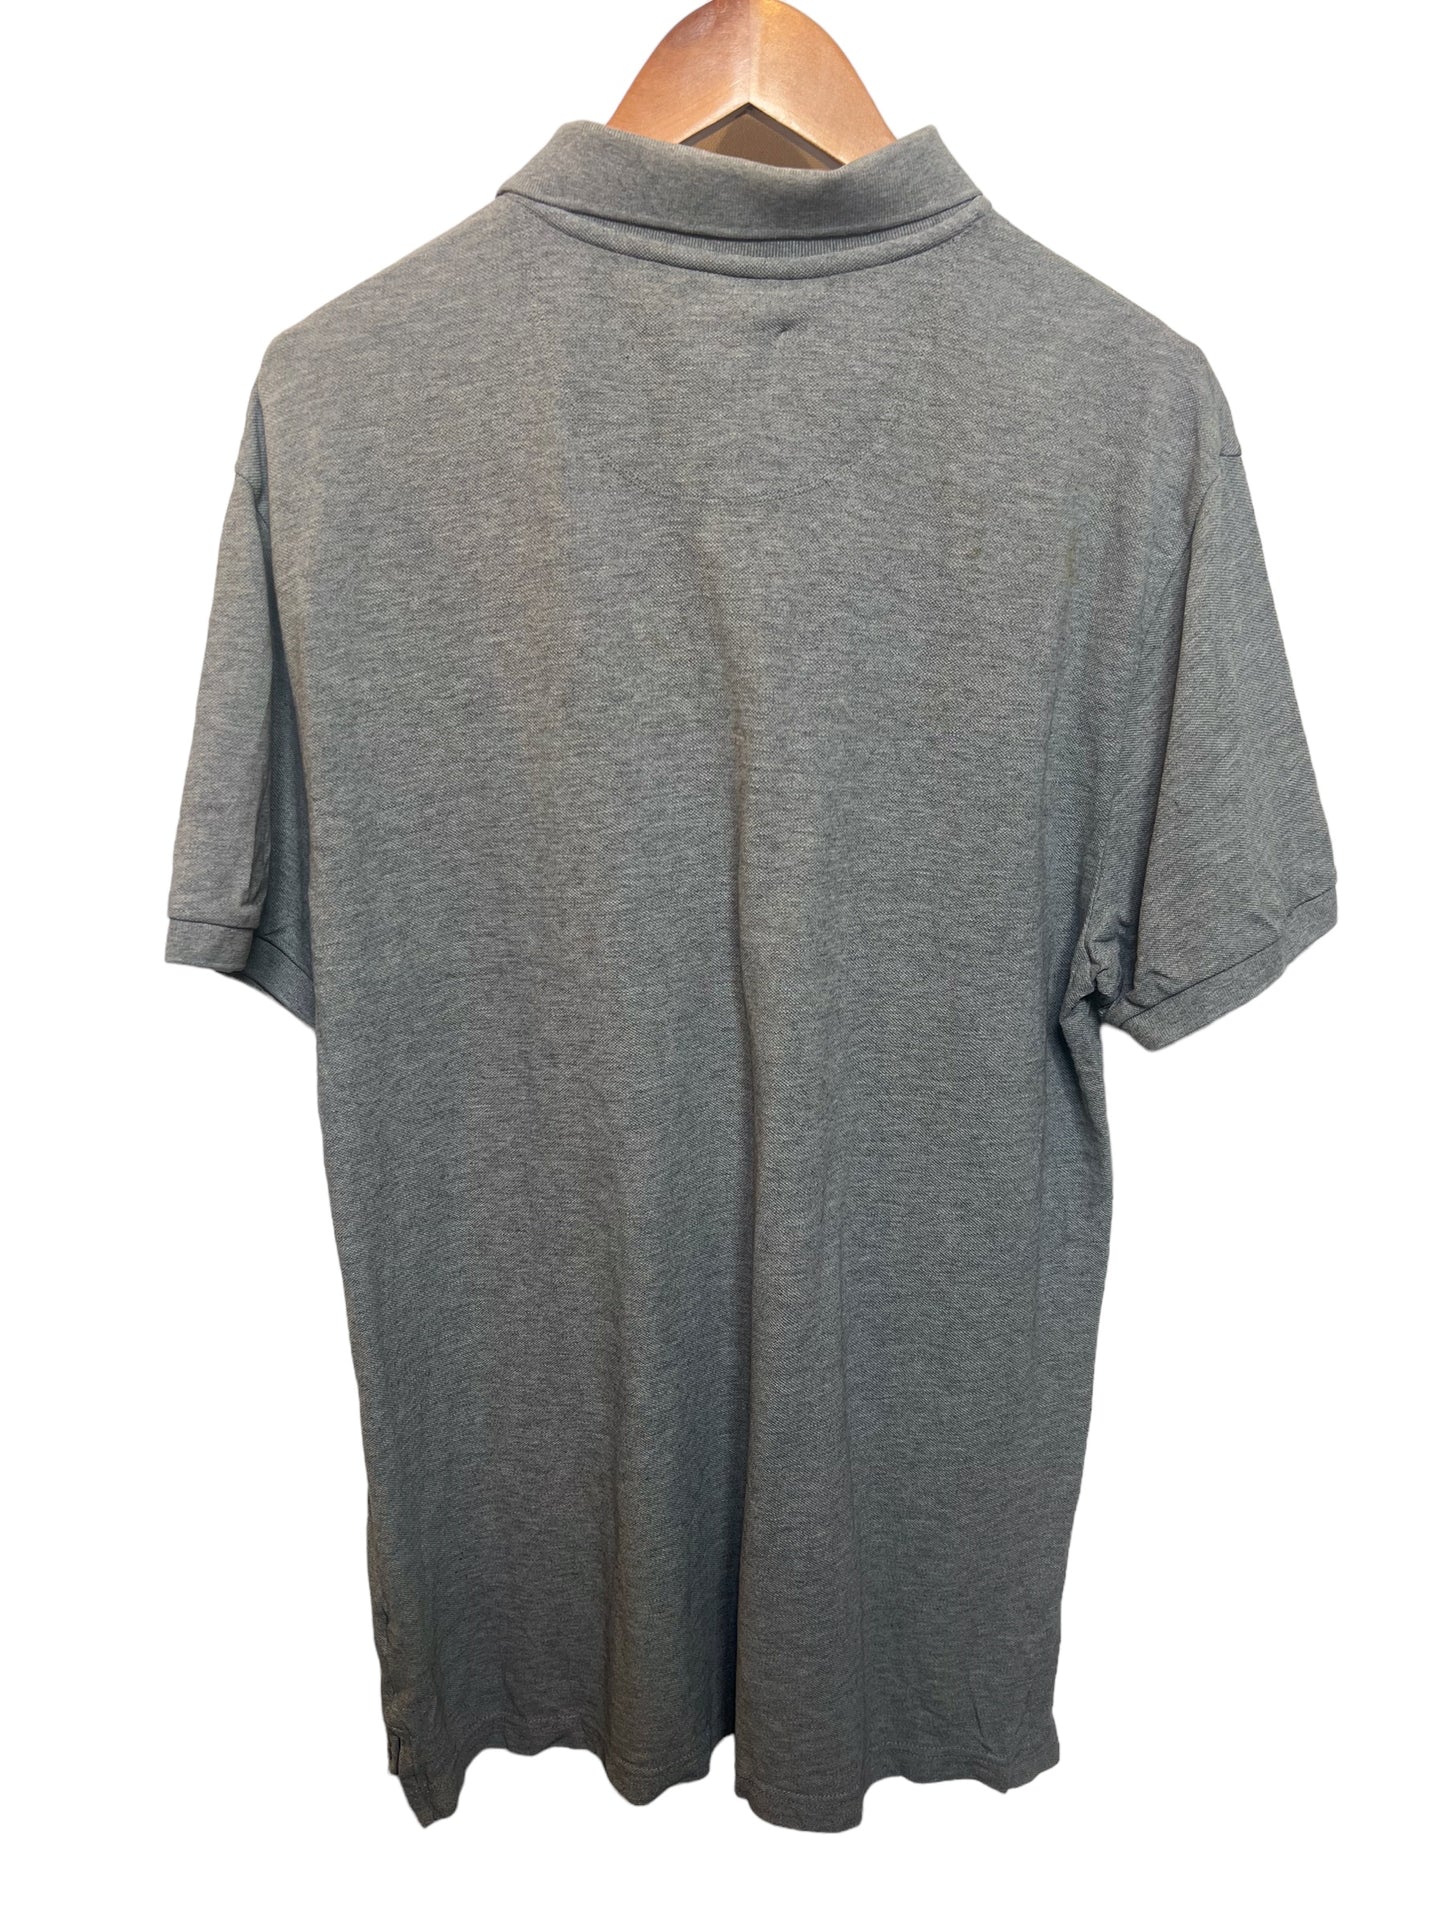 Vintage Gap Grey Polo T Shirt (Size L)